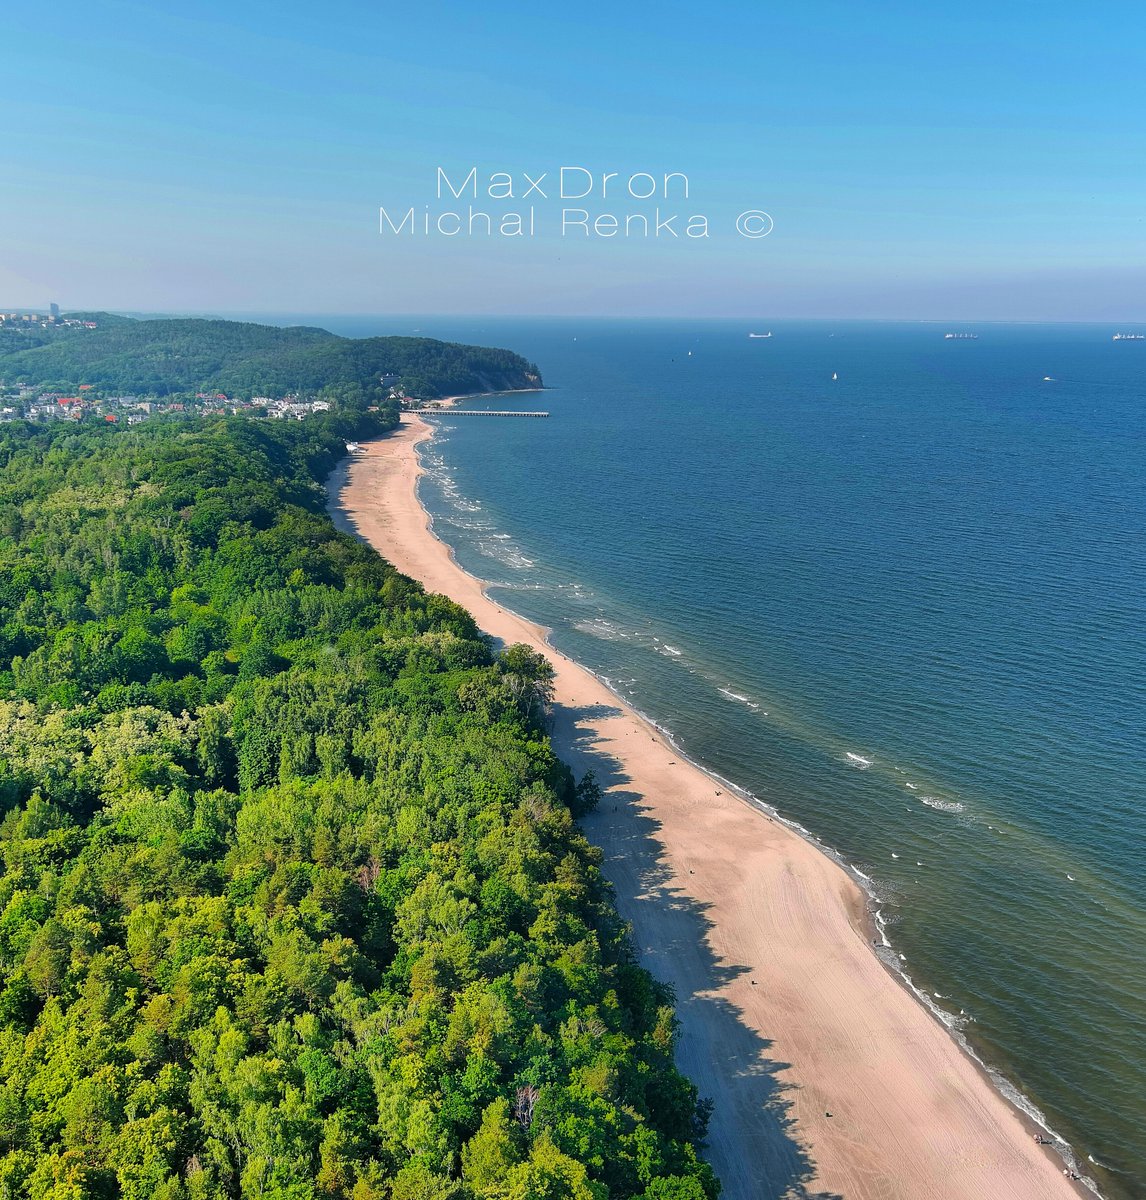 Lato, słońce, plaża. #Gdynia
Znacie ładniejszą? 🏖️🌊
_____________
Fot. MaxDron / zdjęcie z facebookowej grupy Gdynia w obiektywie